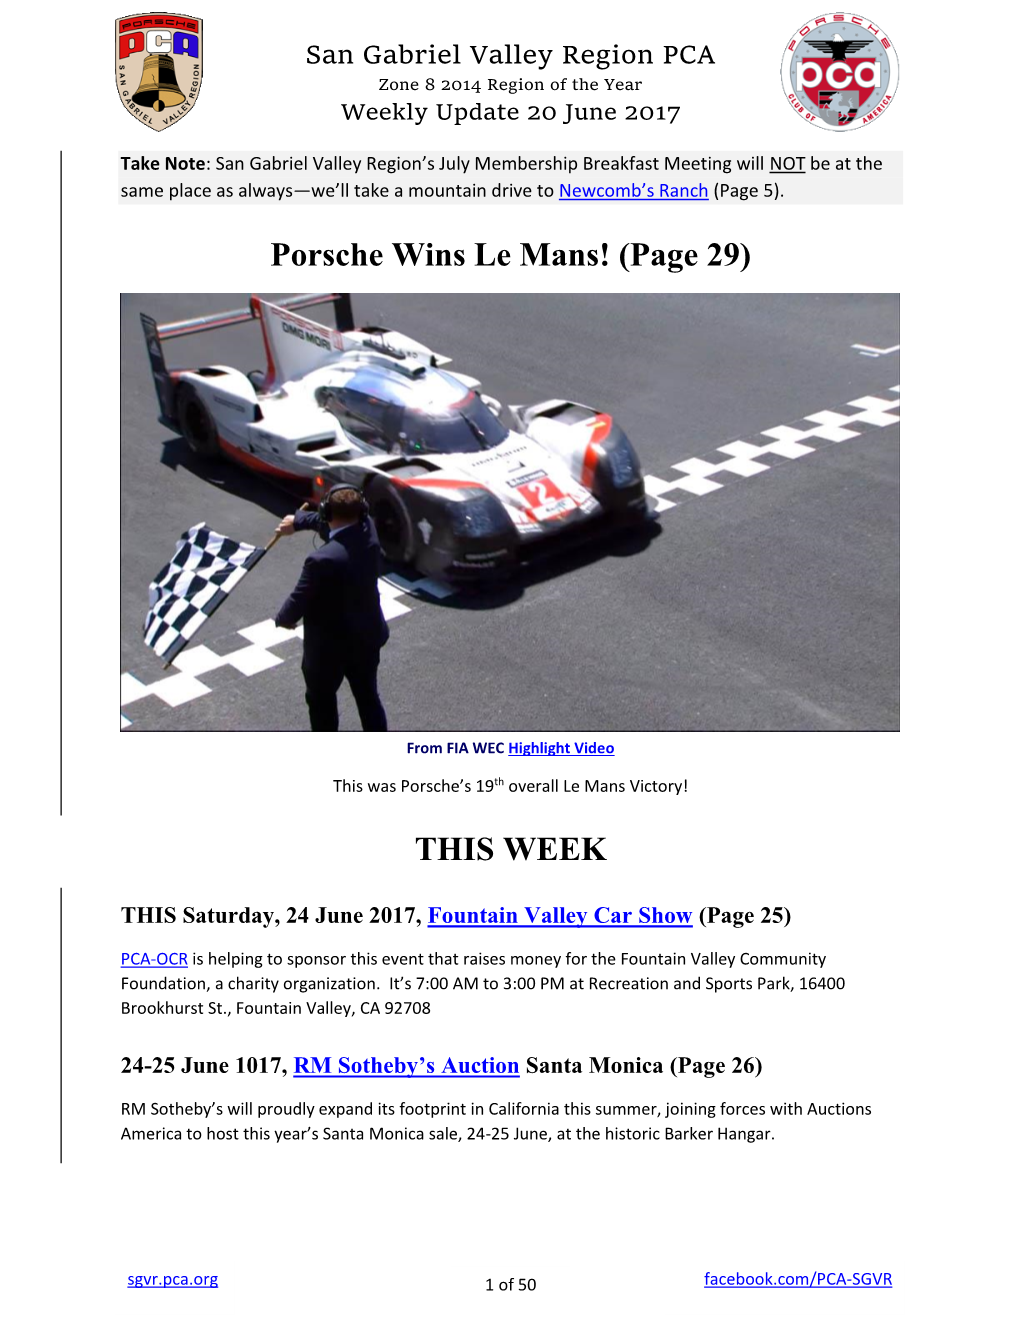 Porsche Wins Le Mans! (Page 29)